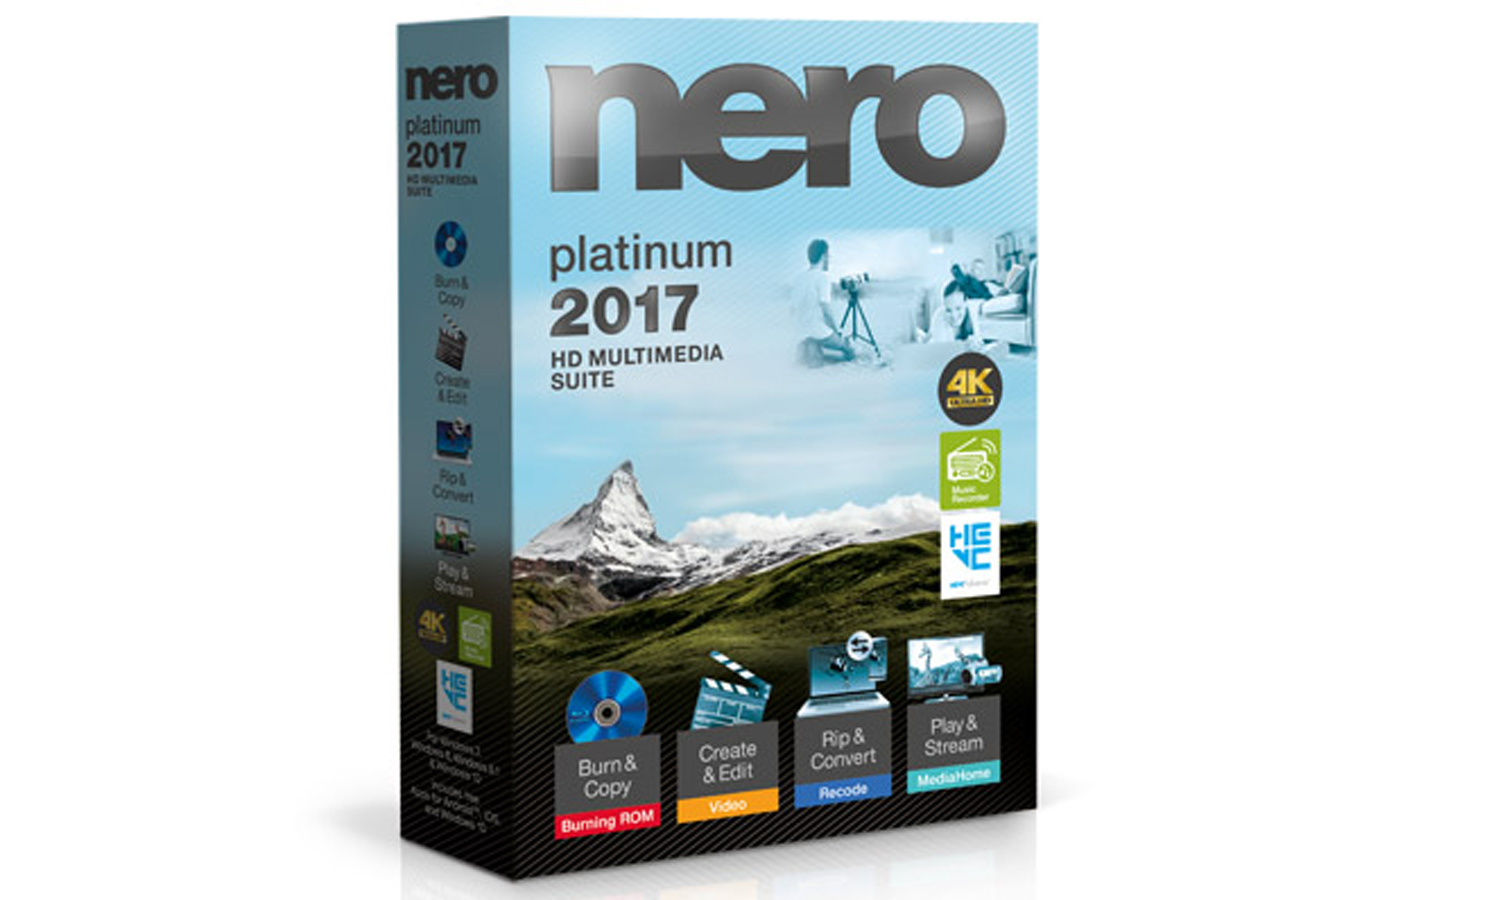 Nero 2016 Platinum Manual Pdf